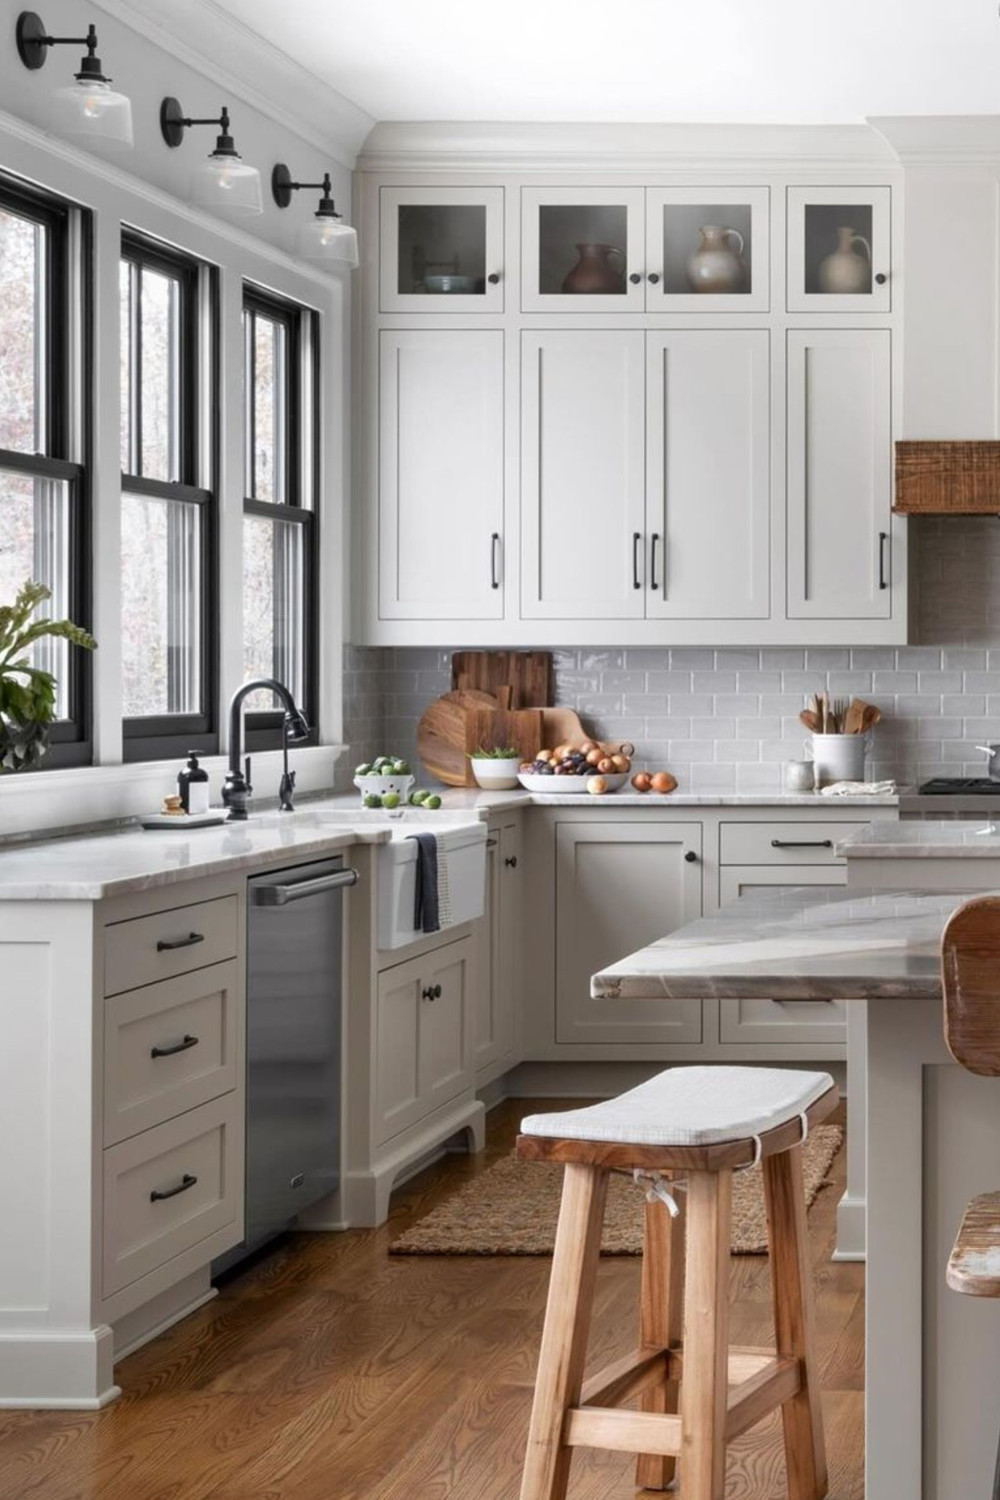 Gray and white kitchen ideas